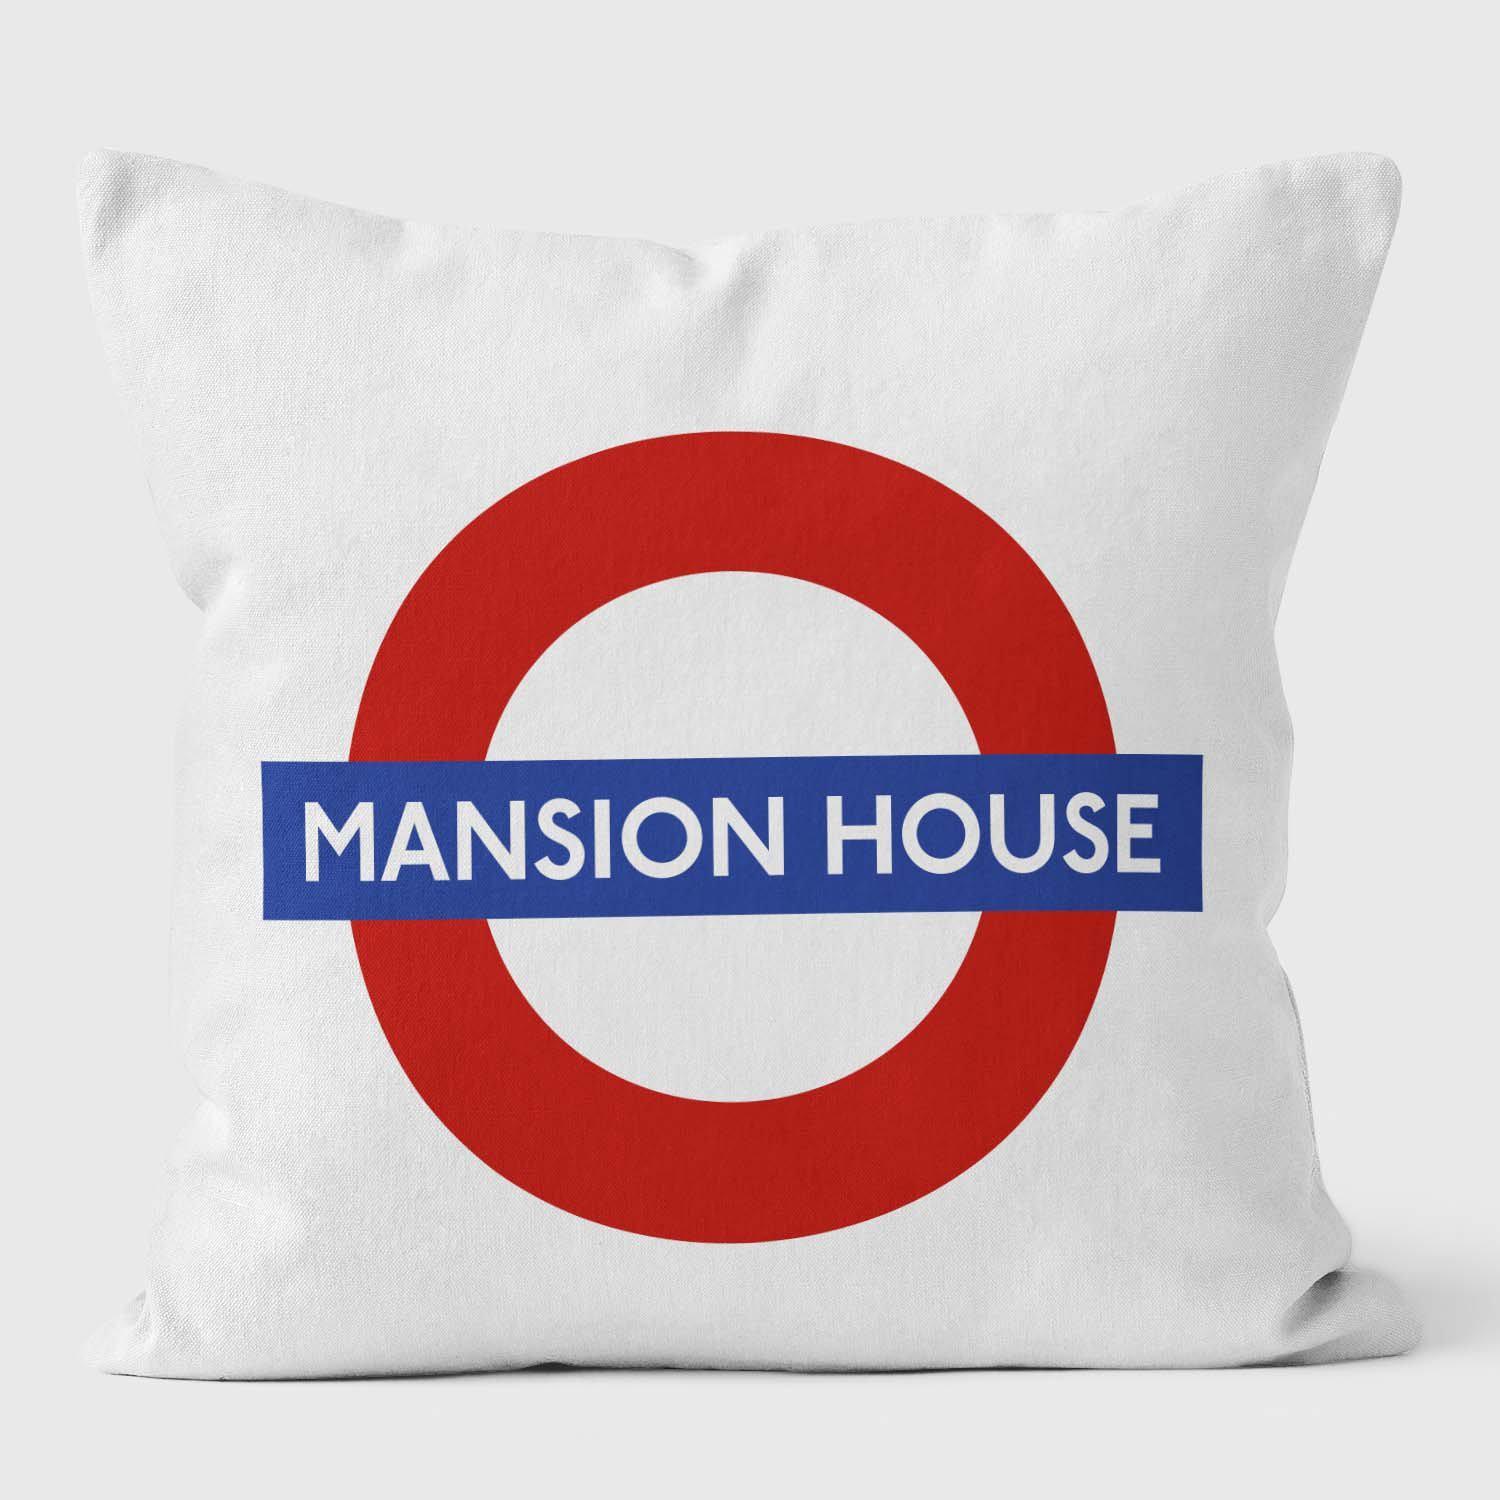 Mansion House London Underground Tube Station Roundel Cushion - Handmade Cushions UK - WeLoveCushions